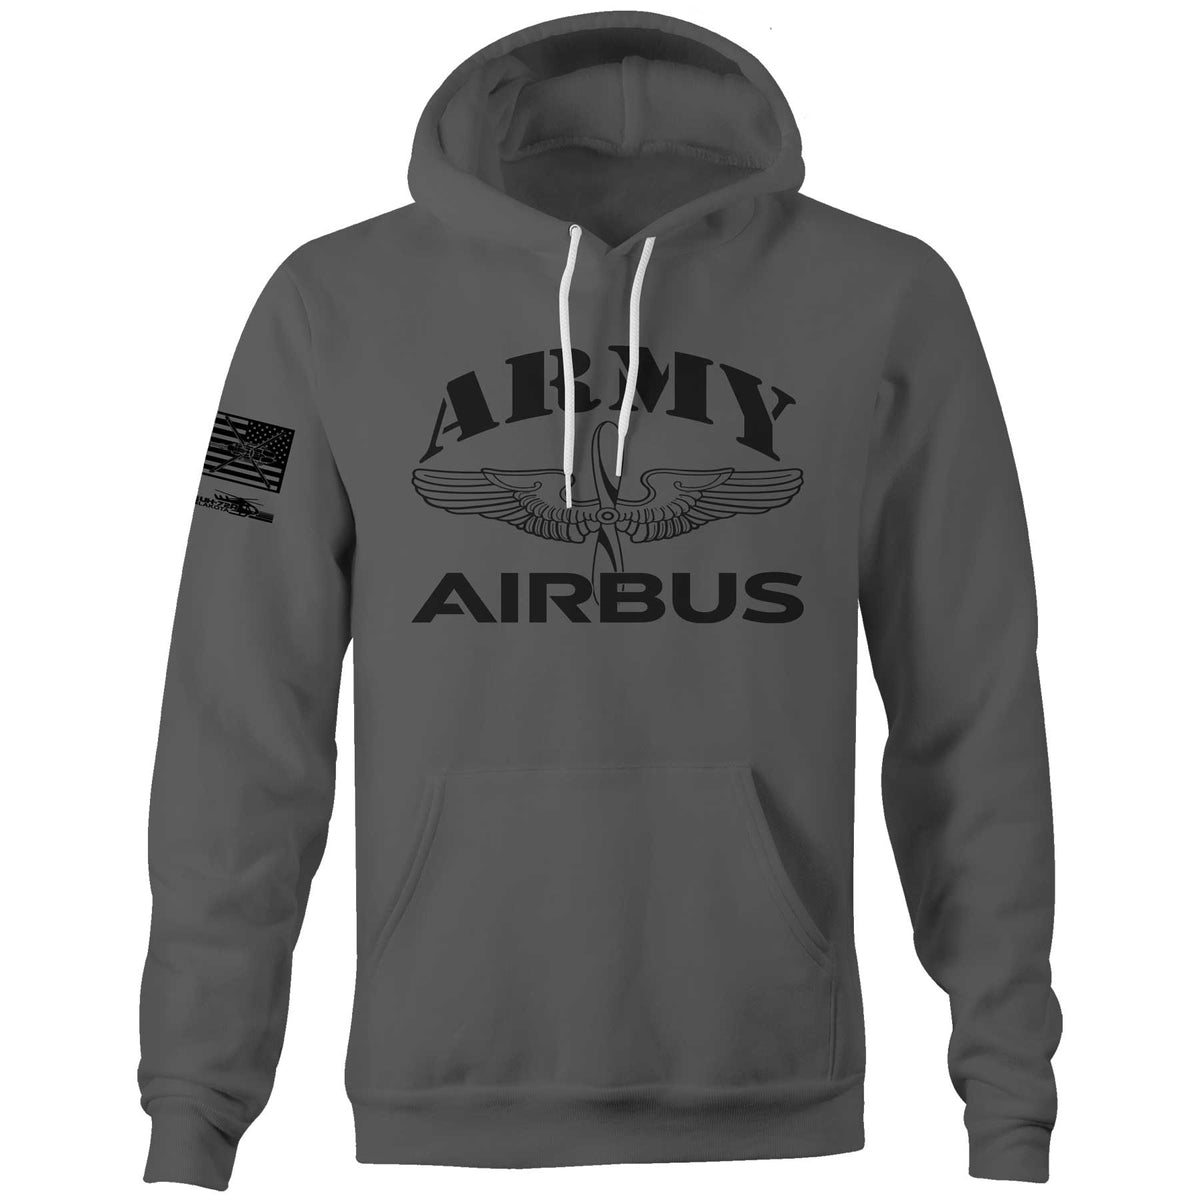 Army Airbus Unisex Hoodie